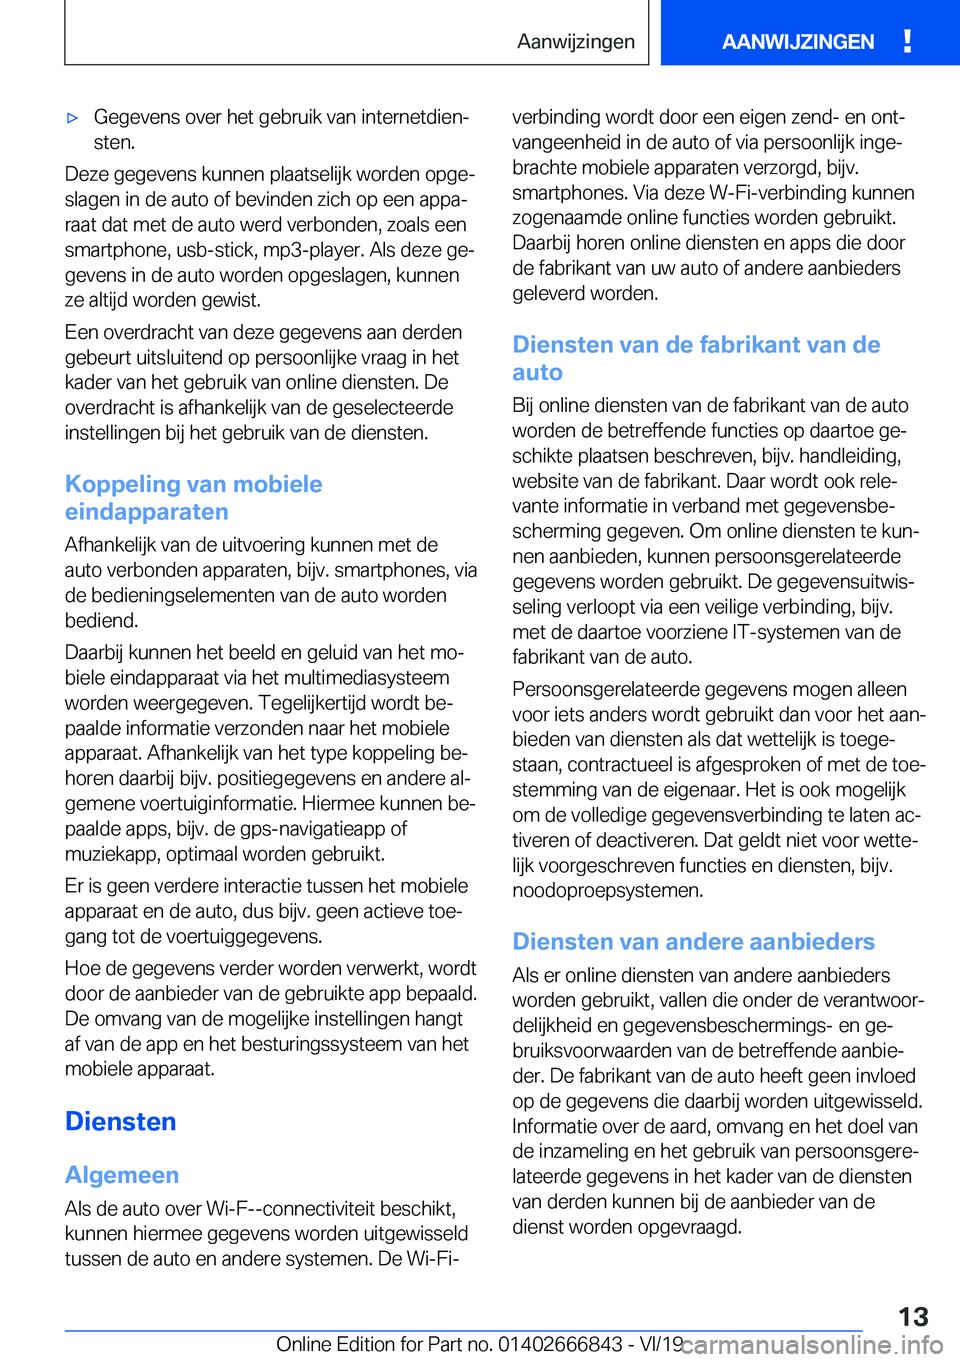 BMW X3 M 2020  Instructieboekjes (in Dutch) 'x�G�e�g�e�v�e�n�s��o�v�e�r��h�e�t��g�e�b�r�u�i�k��v�a�n��i�n�t�e�r�n�e�t�d�i�e�nj
�s�t�e�n�.
�D�e�z�e��g�e�g�e�v�e�n�s��k�u�n�n�e�n��p�l�a�a�t�s�e�l�i�j�k��w�o�r�d�e�n��o�p�g�ej
�s�l�